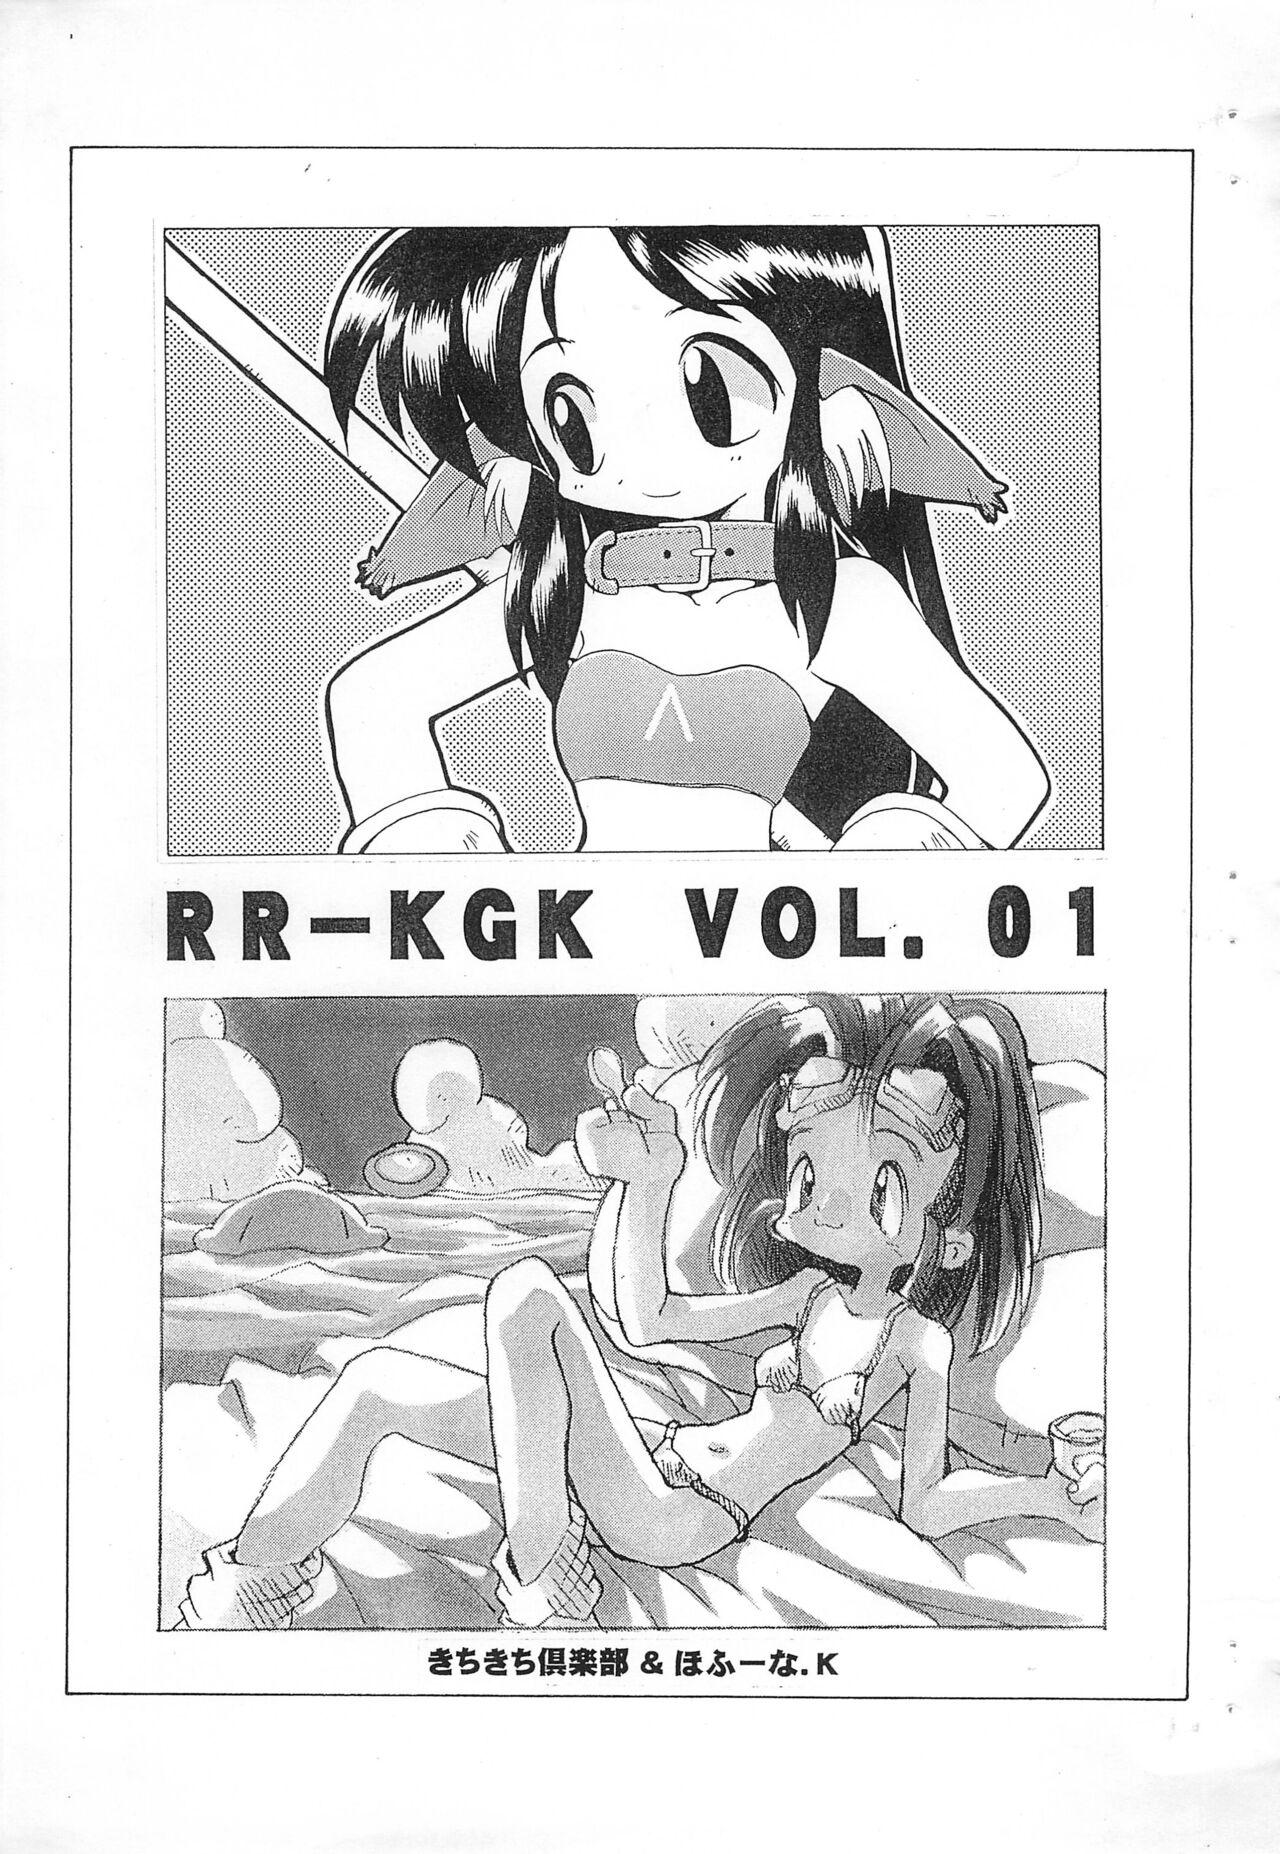 RR-KGK VOL.01 (コミティア37) [きちきち倶楽部、ほふーな．K (鬼畜広子、へっぽこぽこぽこぽこのすけGX)]  0